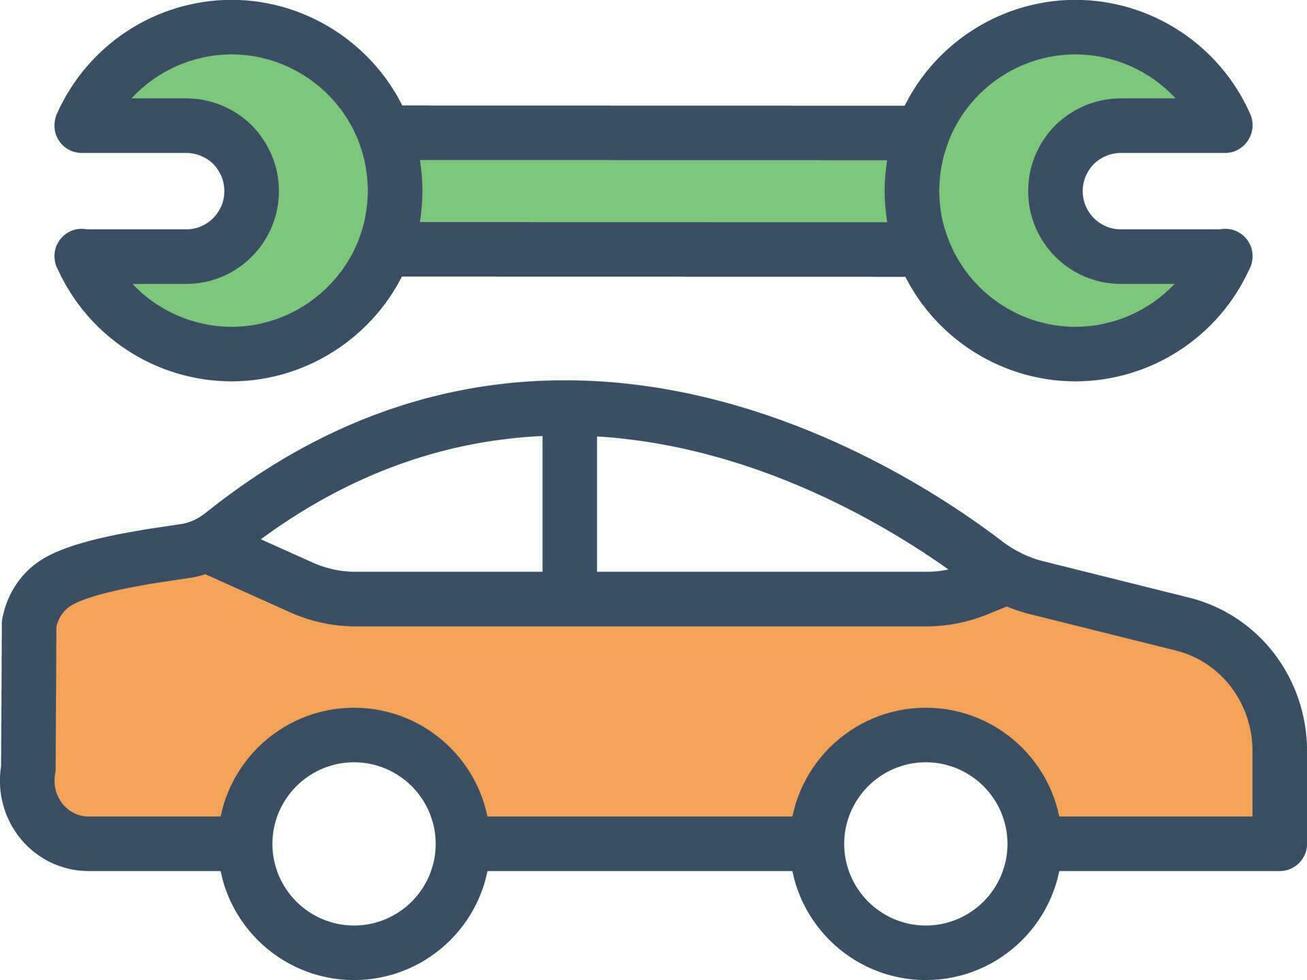 illustration vectorielle de réparation de voiture sur fond. symboles de qualité premium. icônes vectorielles pour le concept et la conception graphique. vecteur